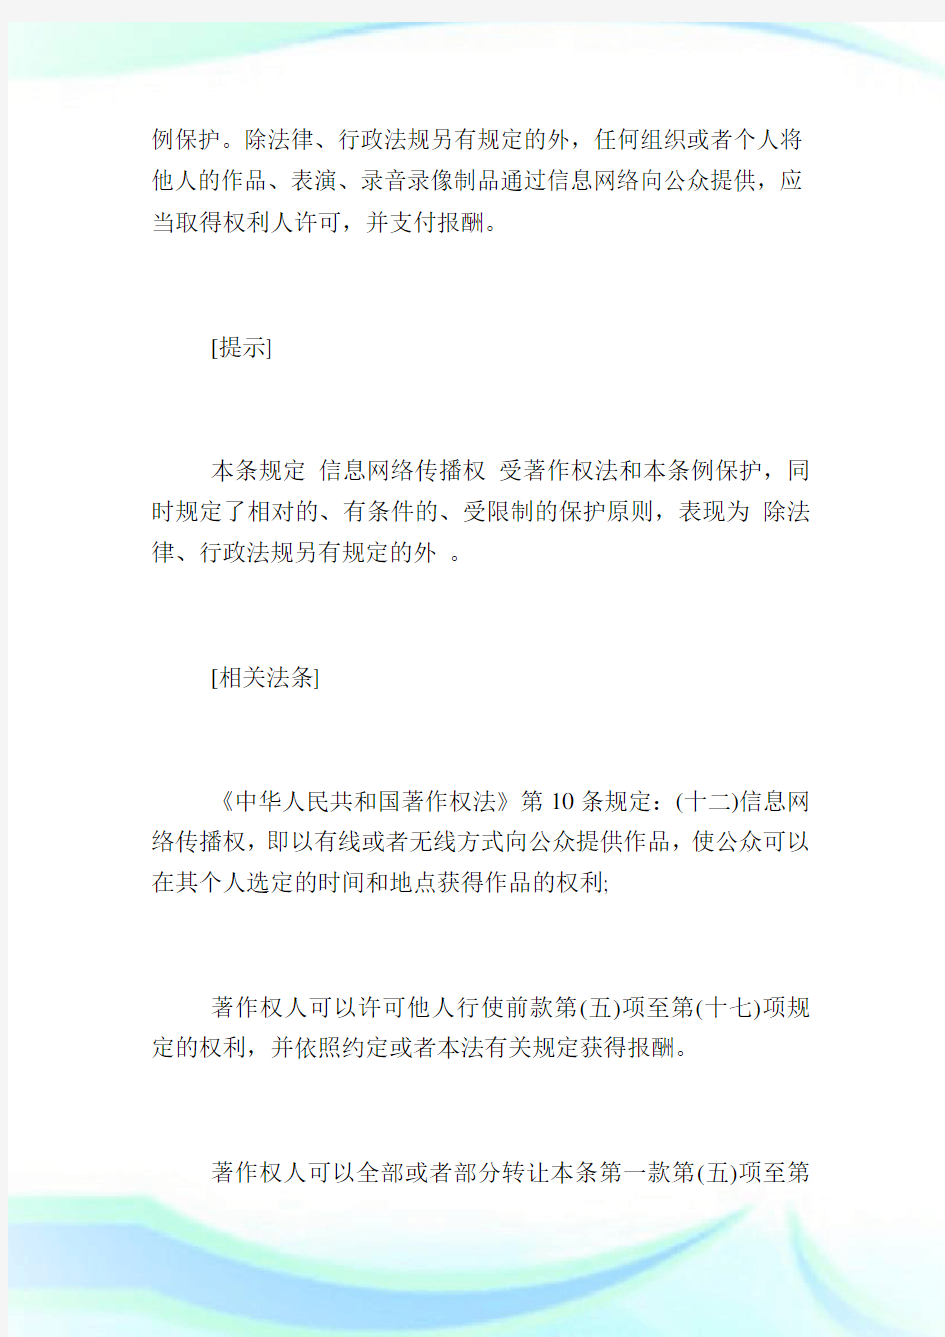 《消息网络传播权保护条例》条文详解(二).doc